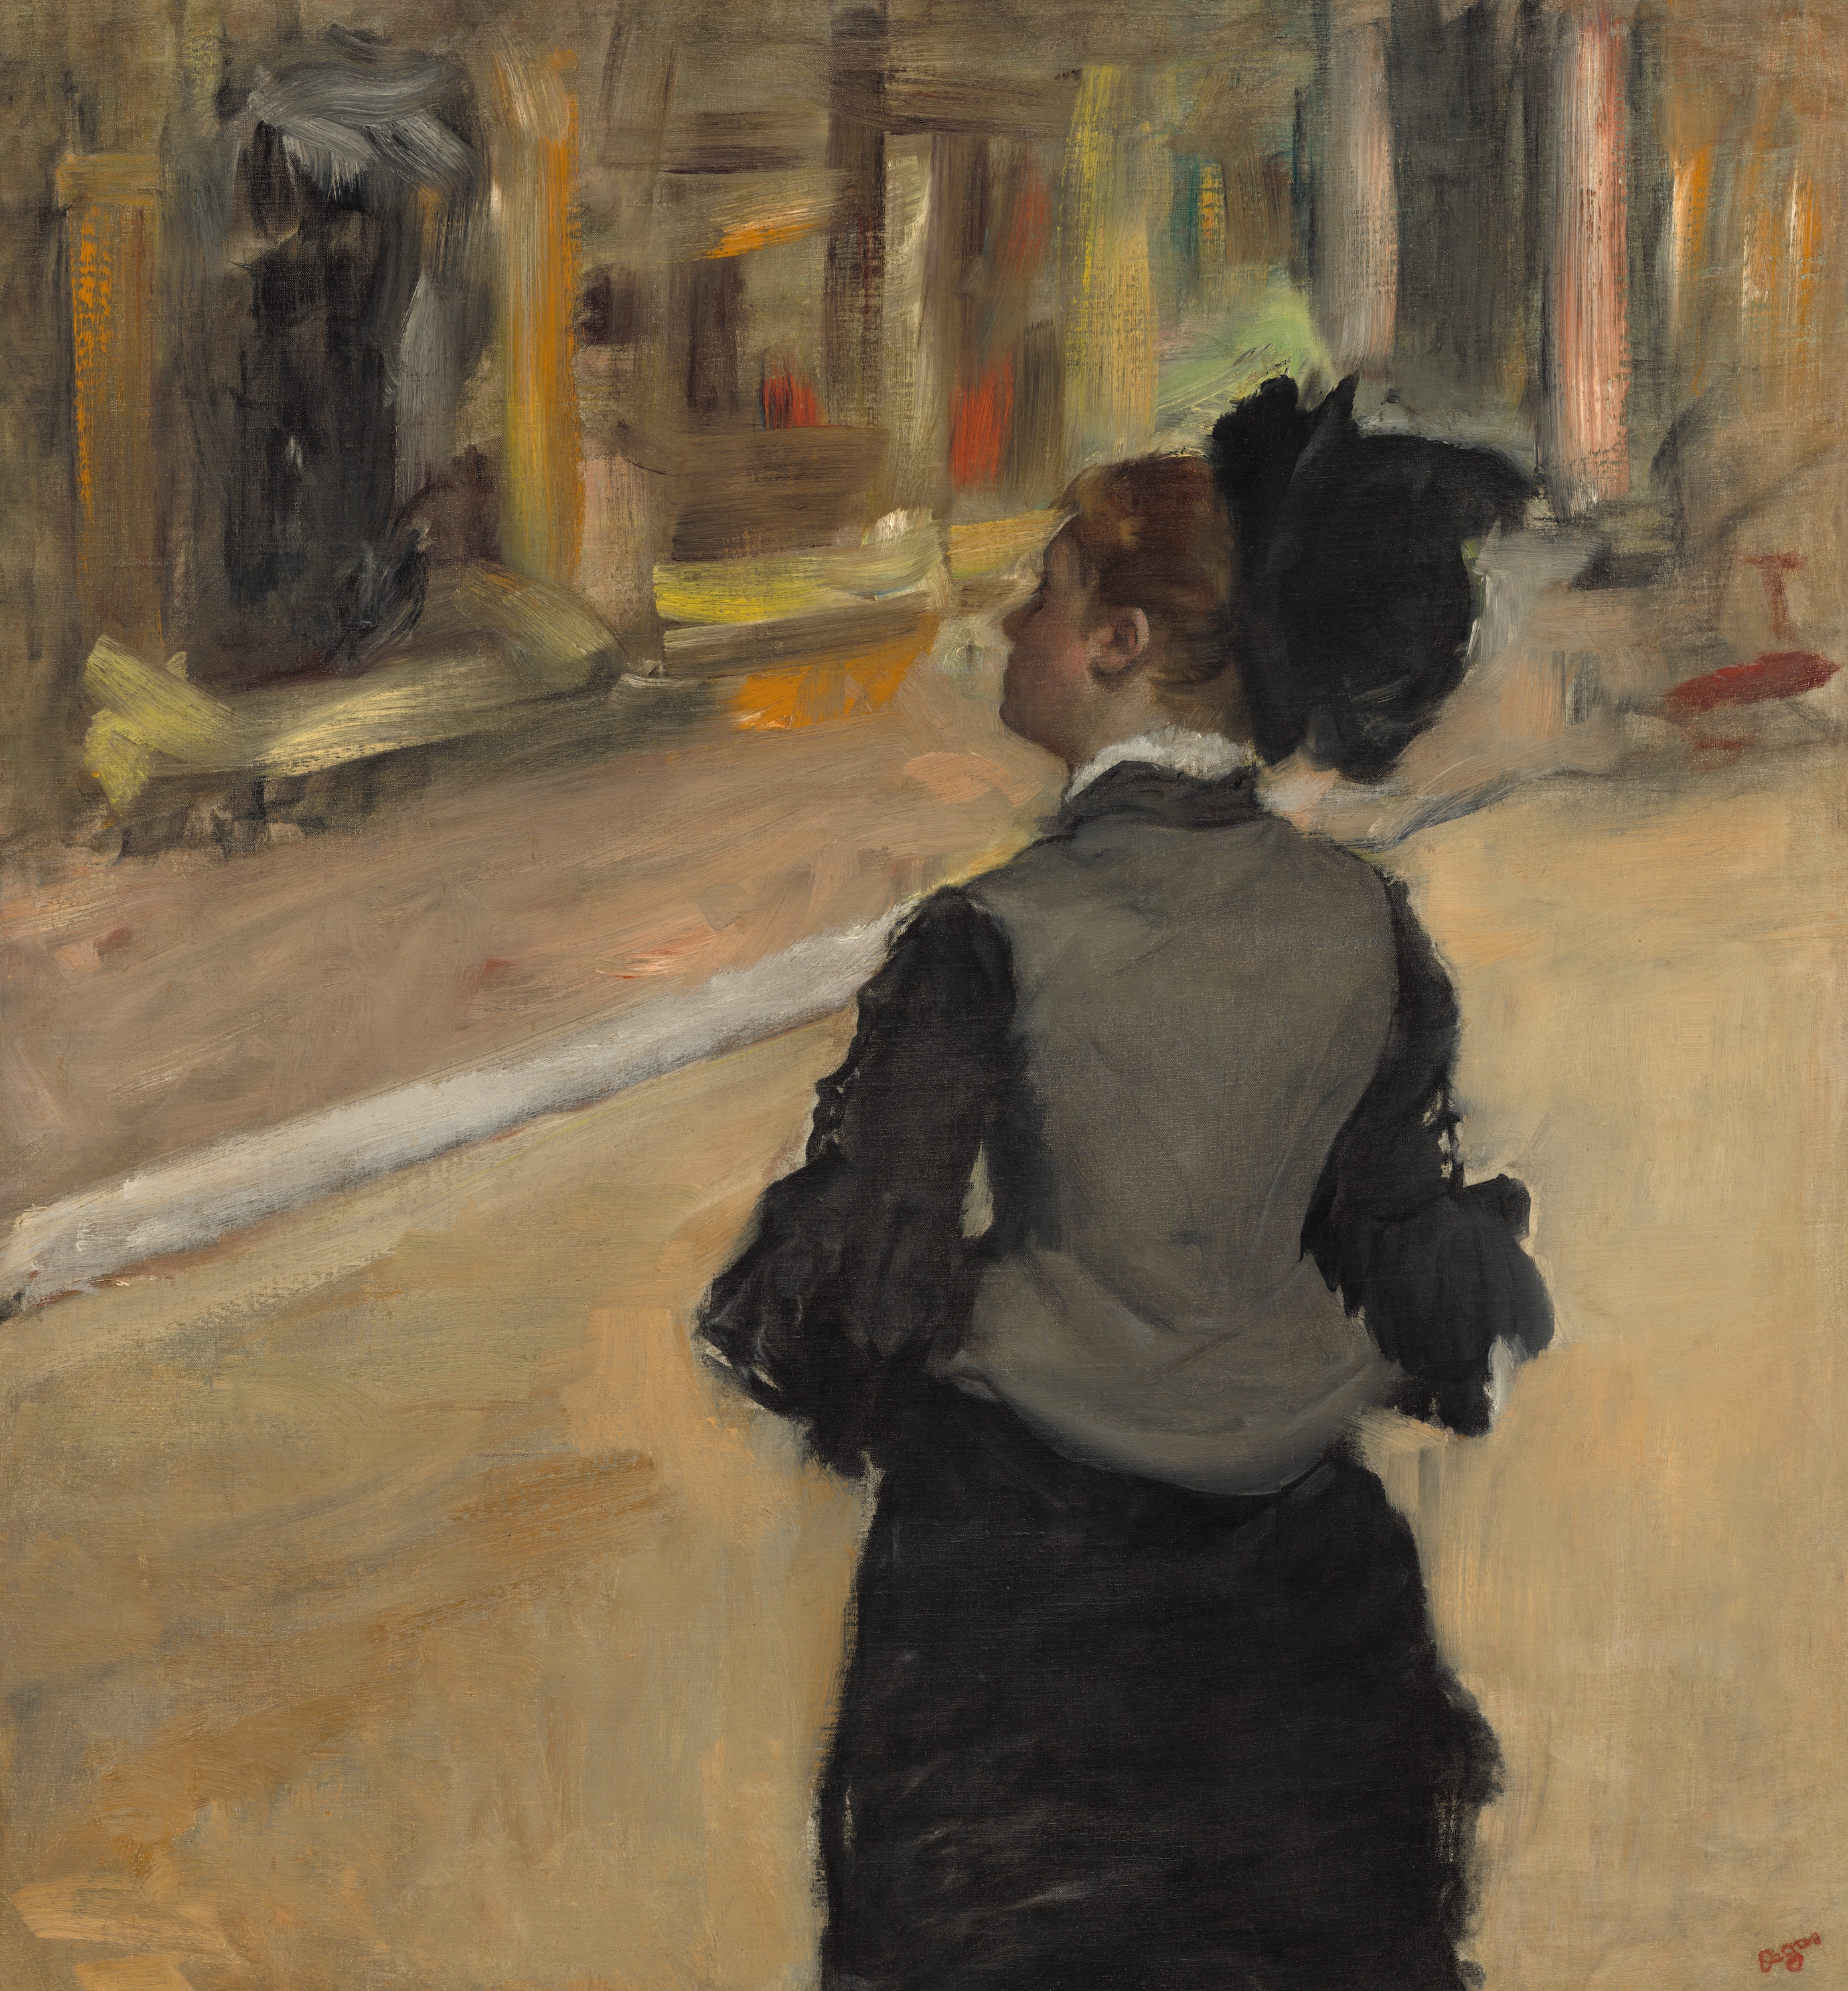 뒤에서 바라본 여인(박물관 방문)(Woman Viewed from Behind (Visit to a Museum)) by Edgar Degas - 약 1879년부터 약 1885 사이 - 81.3 × 75.6 cm 